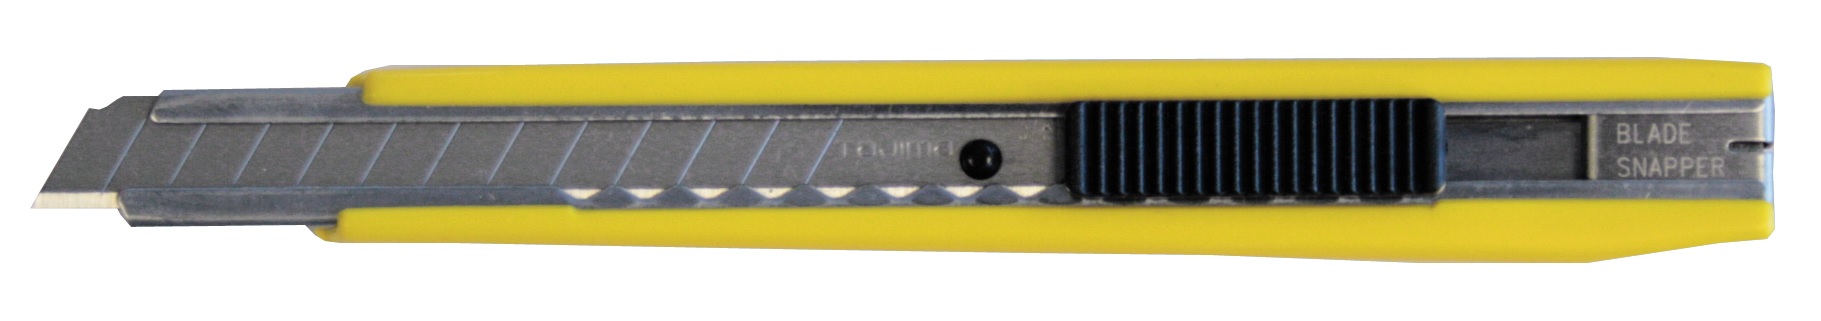 Cutter 9mm renfort métallique auto-lock